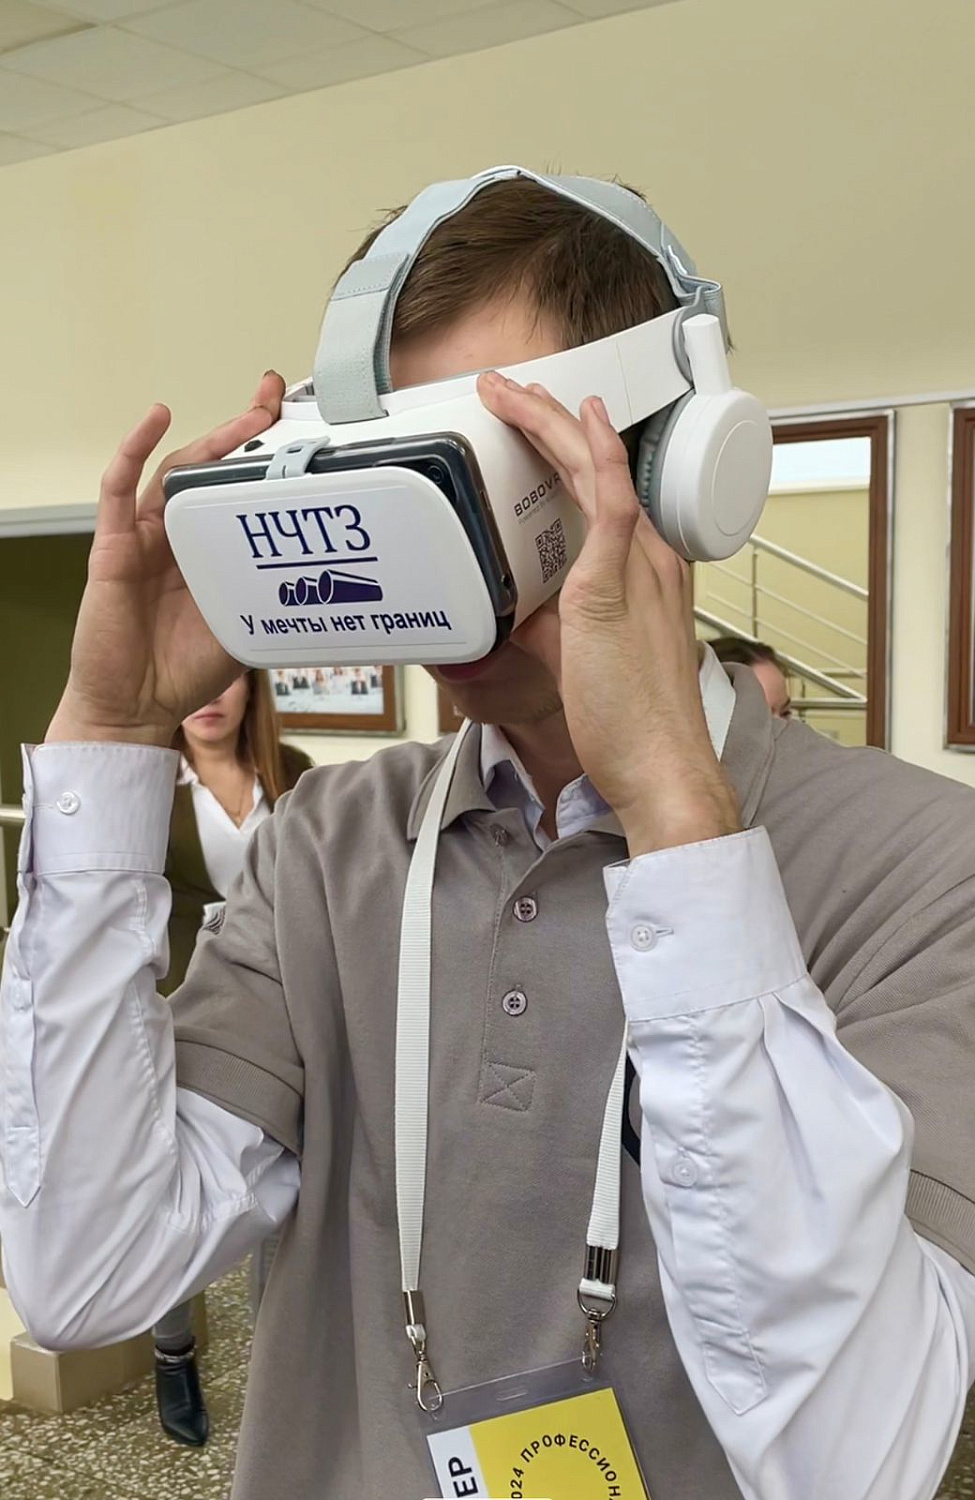 Инновационный подход: VR-технологии для презентации вакансий НЧТЗ